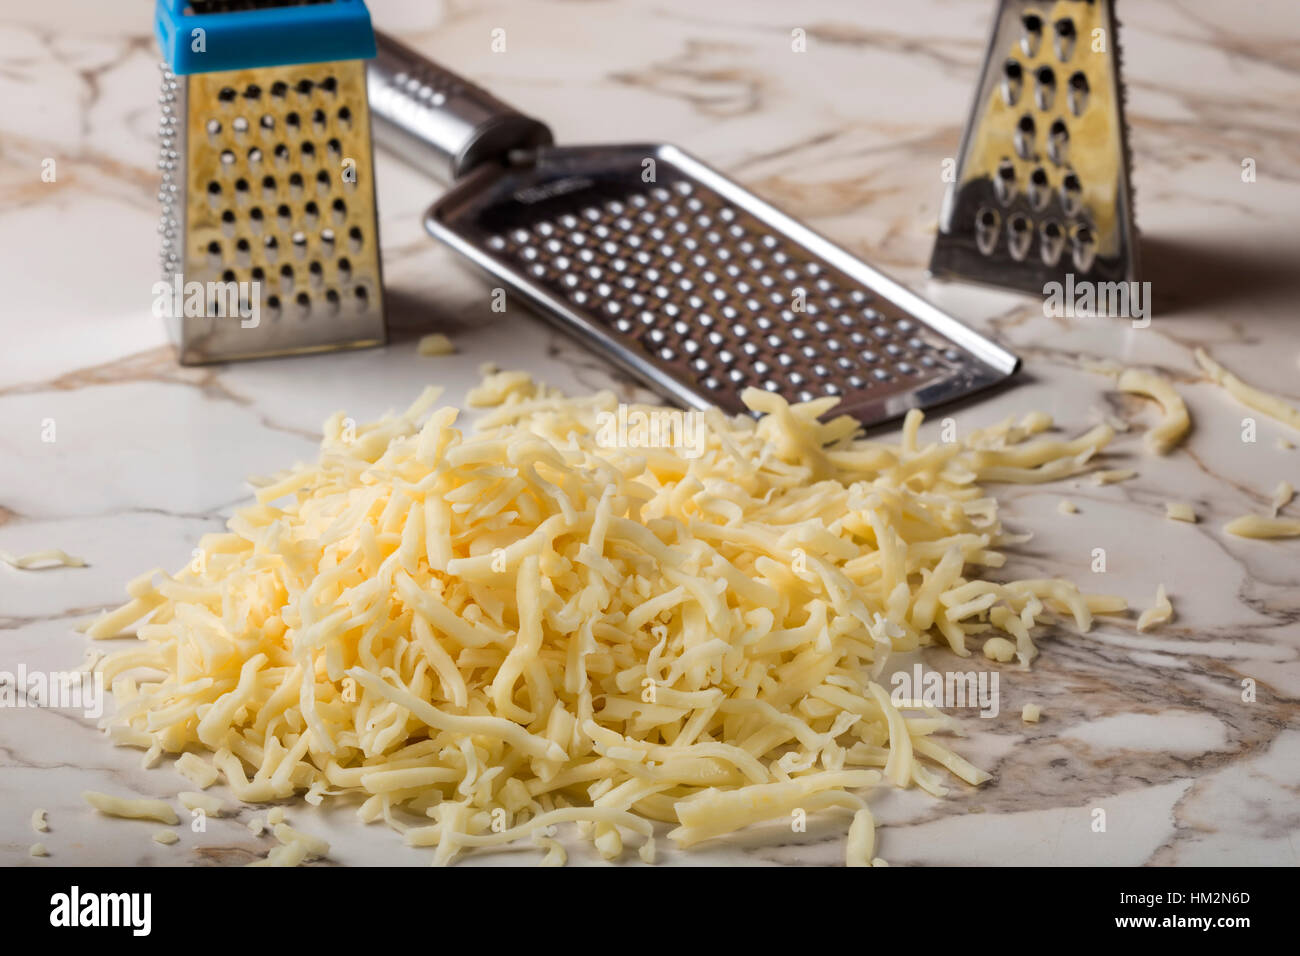 Mélanger le fromage râpé sur la table et trois vives en acier inoxydable en arrière-plan Banque D'Images